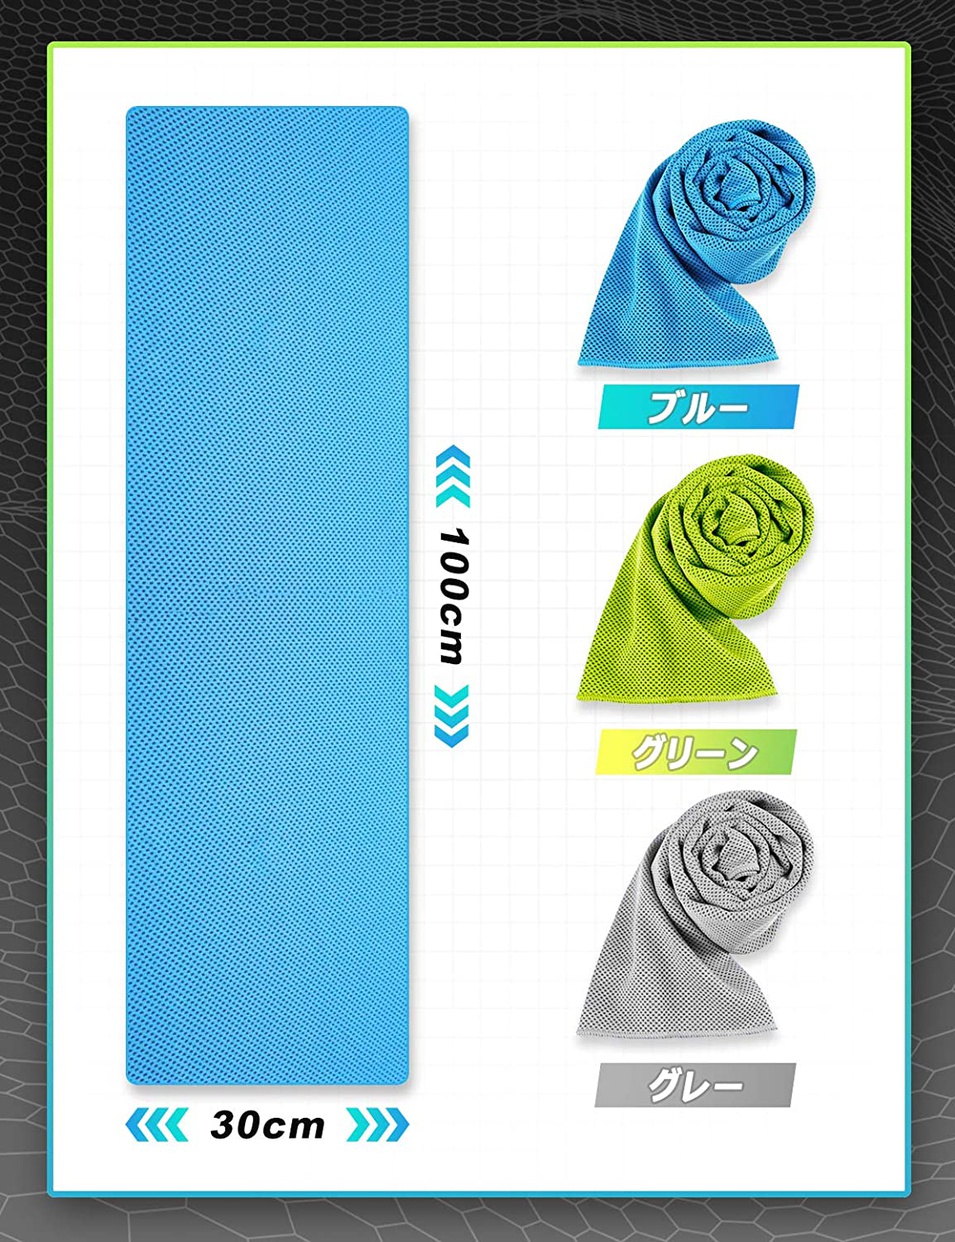 Xingmeng(シングメング) UVカット冷却タオルの商品画像9 